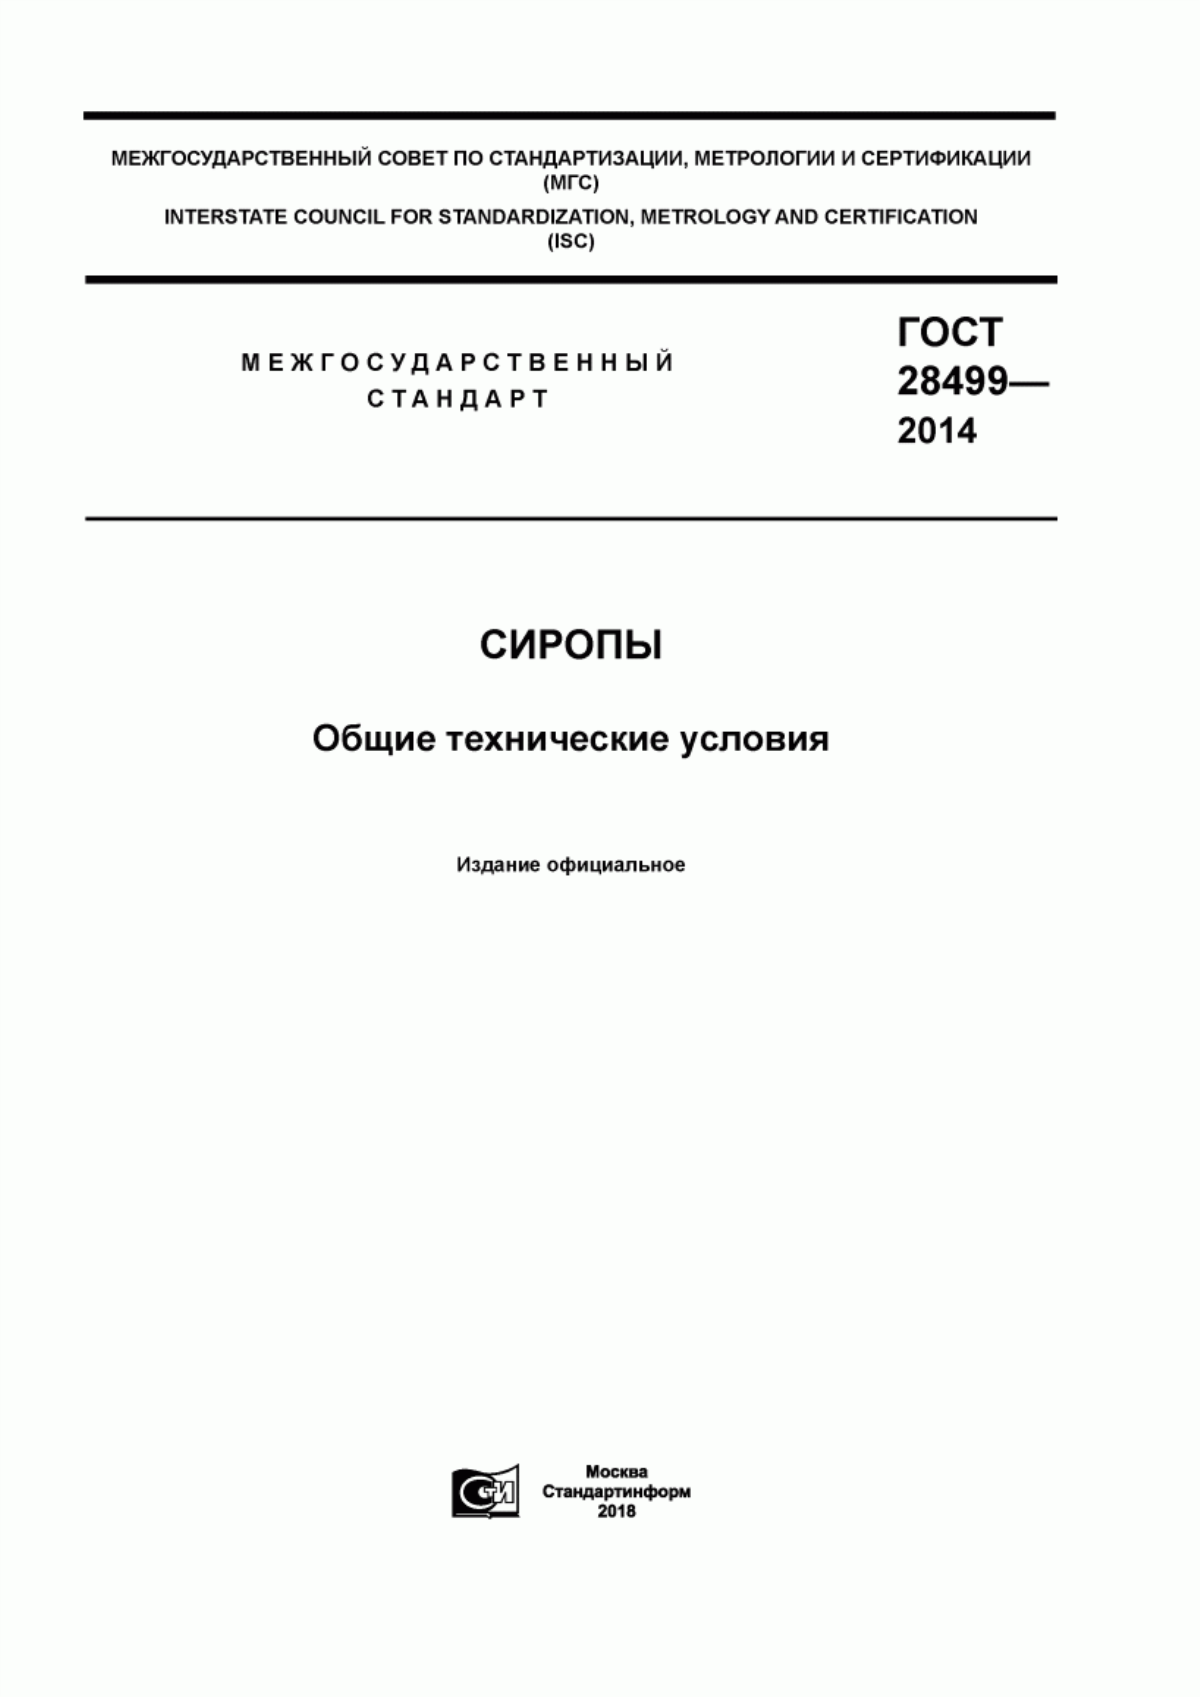 ГОСТ 28499-2014 Сиропы. Общие технические условия